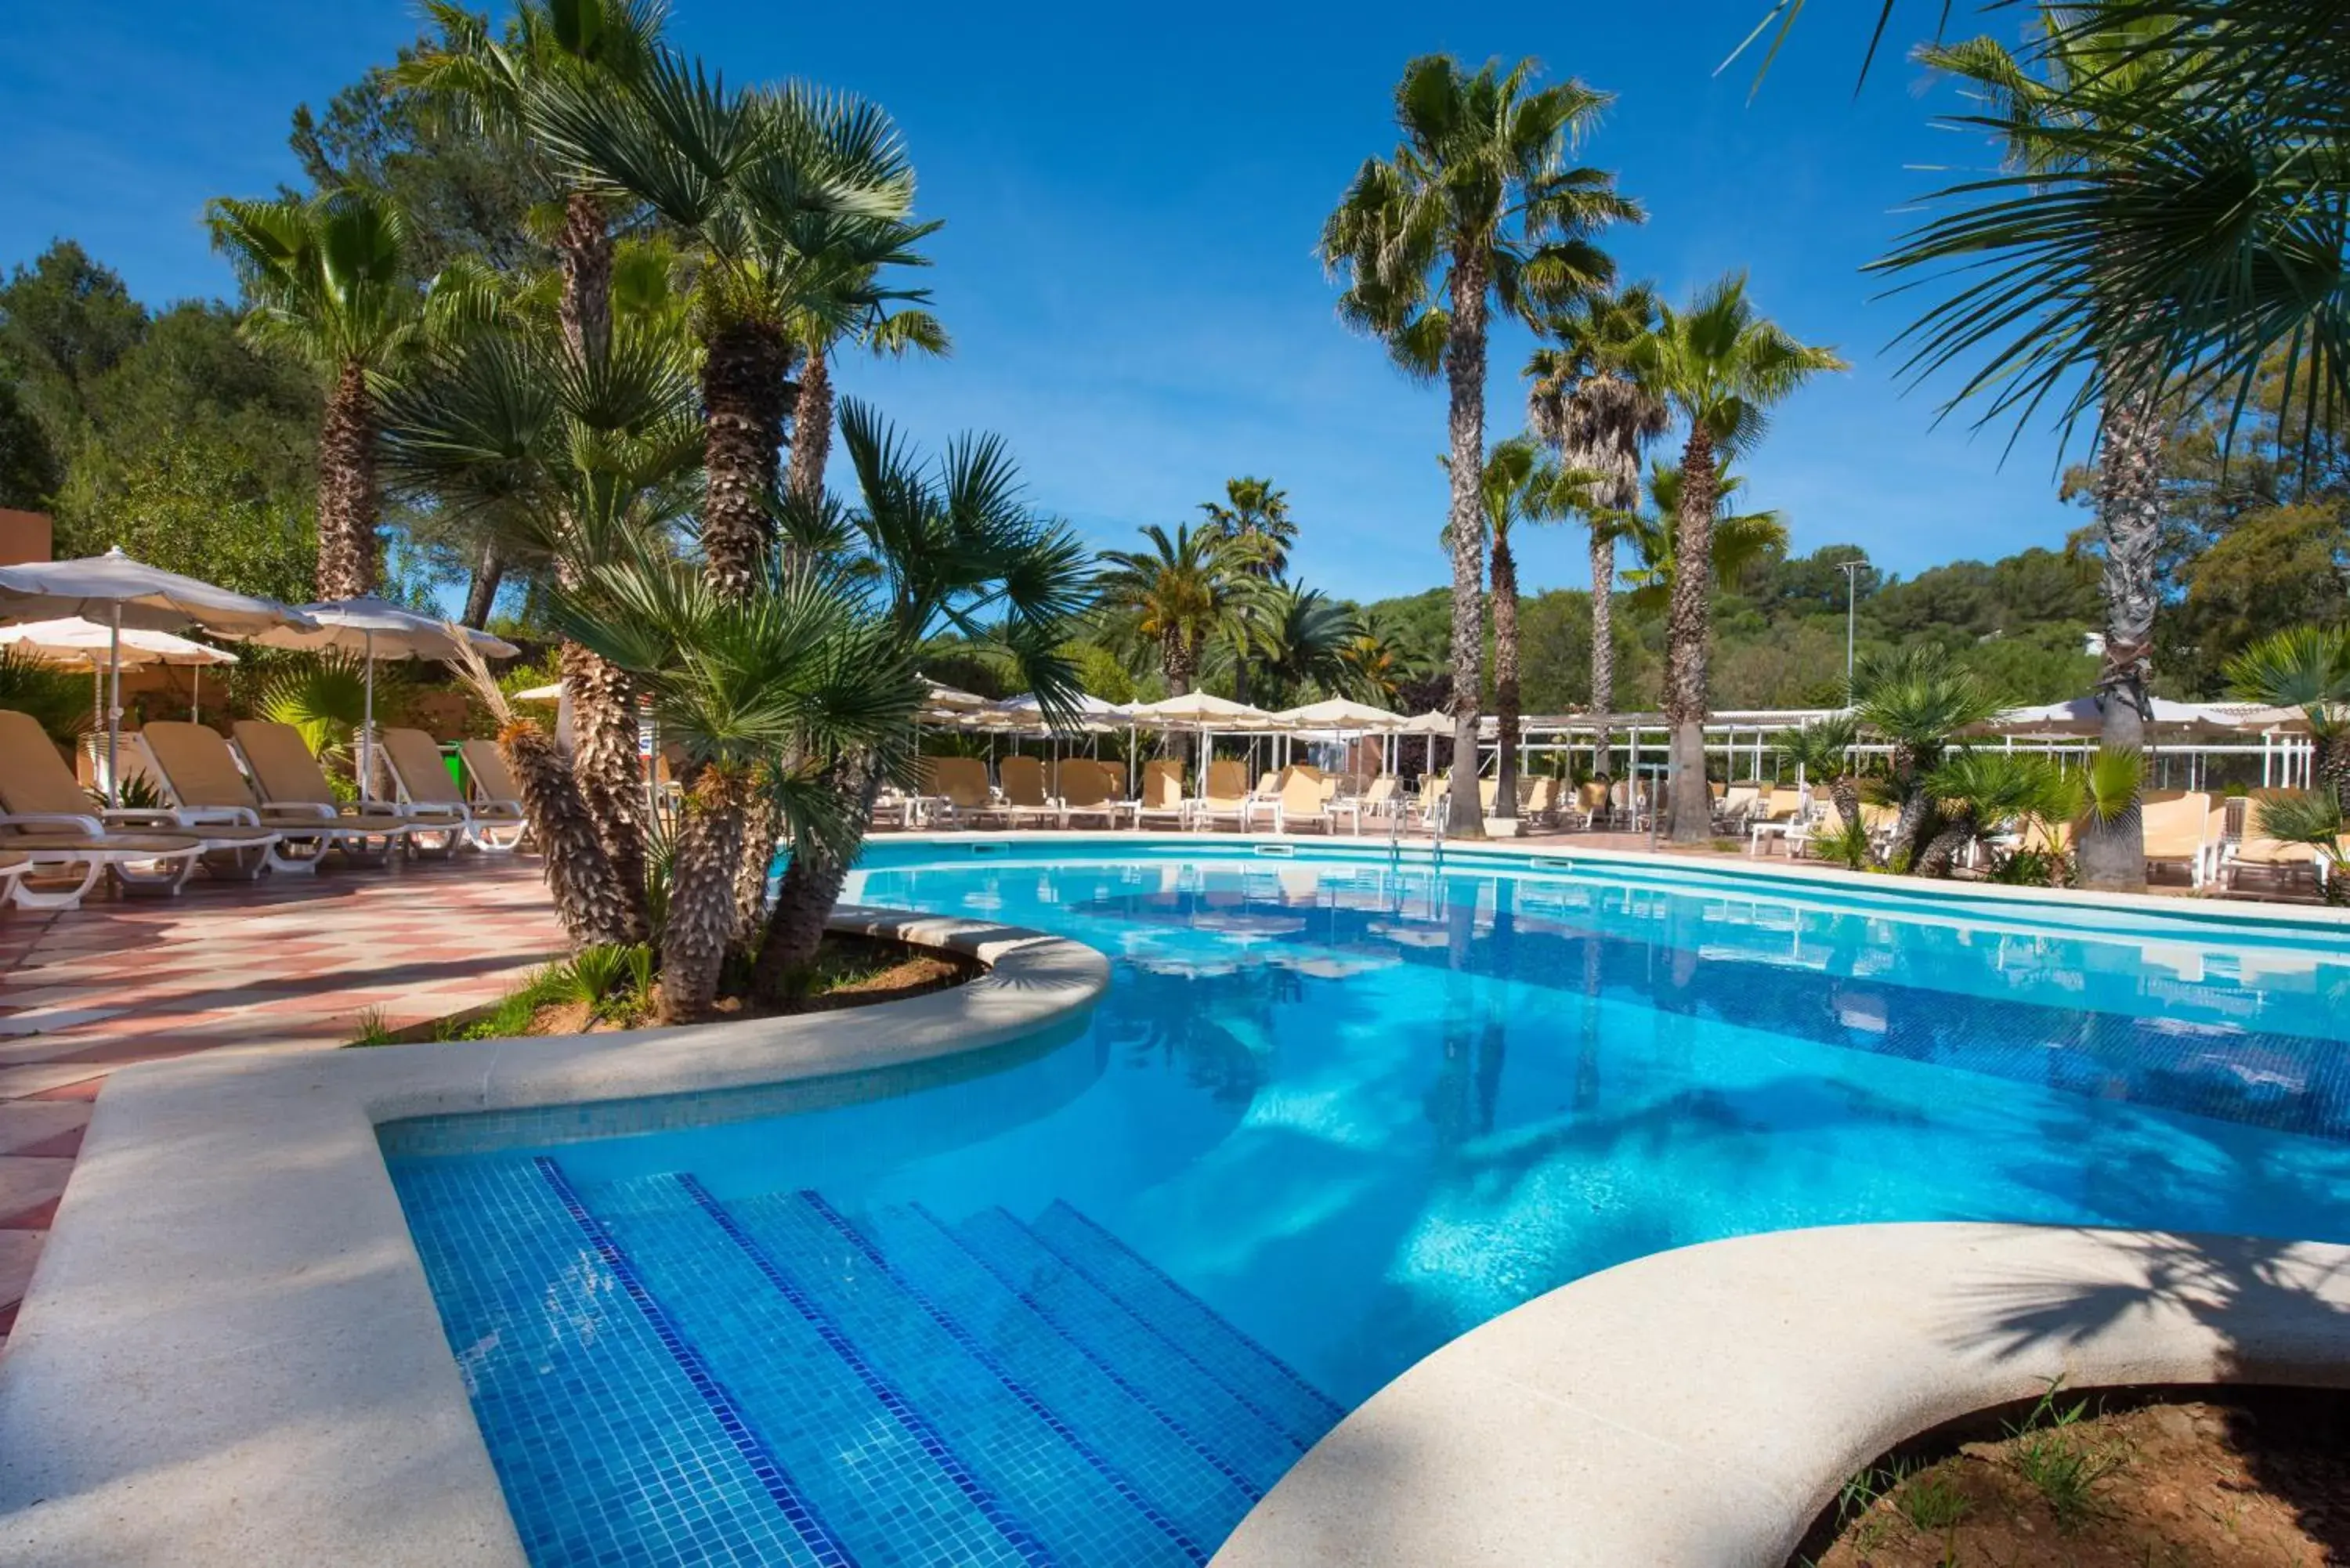 Swimming Pool in Hotel Cala Romantica Mallorca